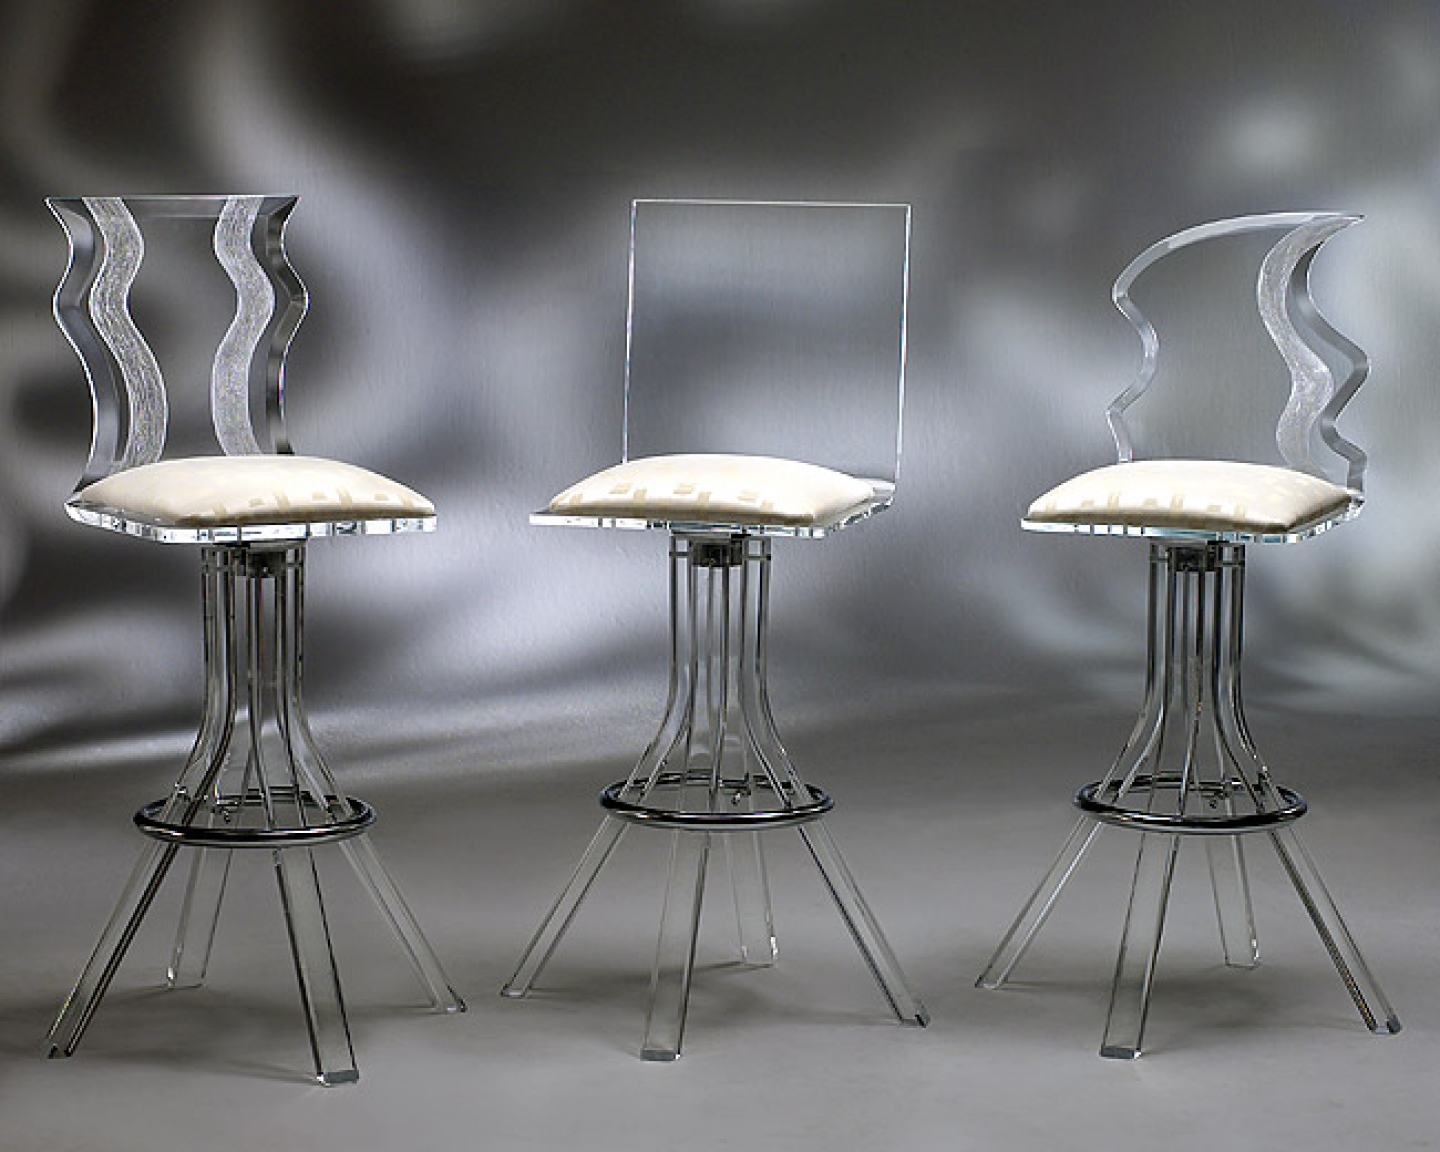  design for houseskepler house wallpaper modern kitchen bar stools